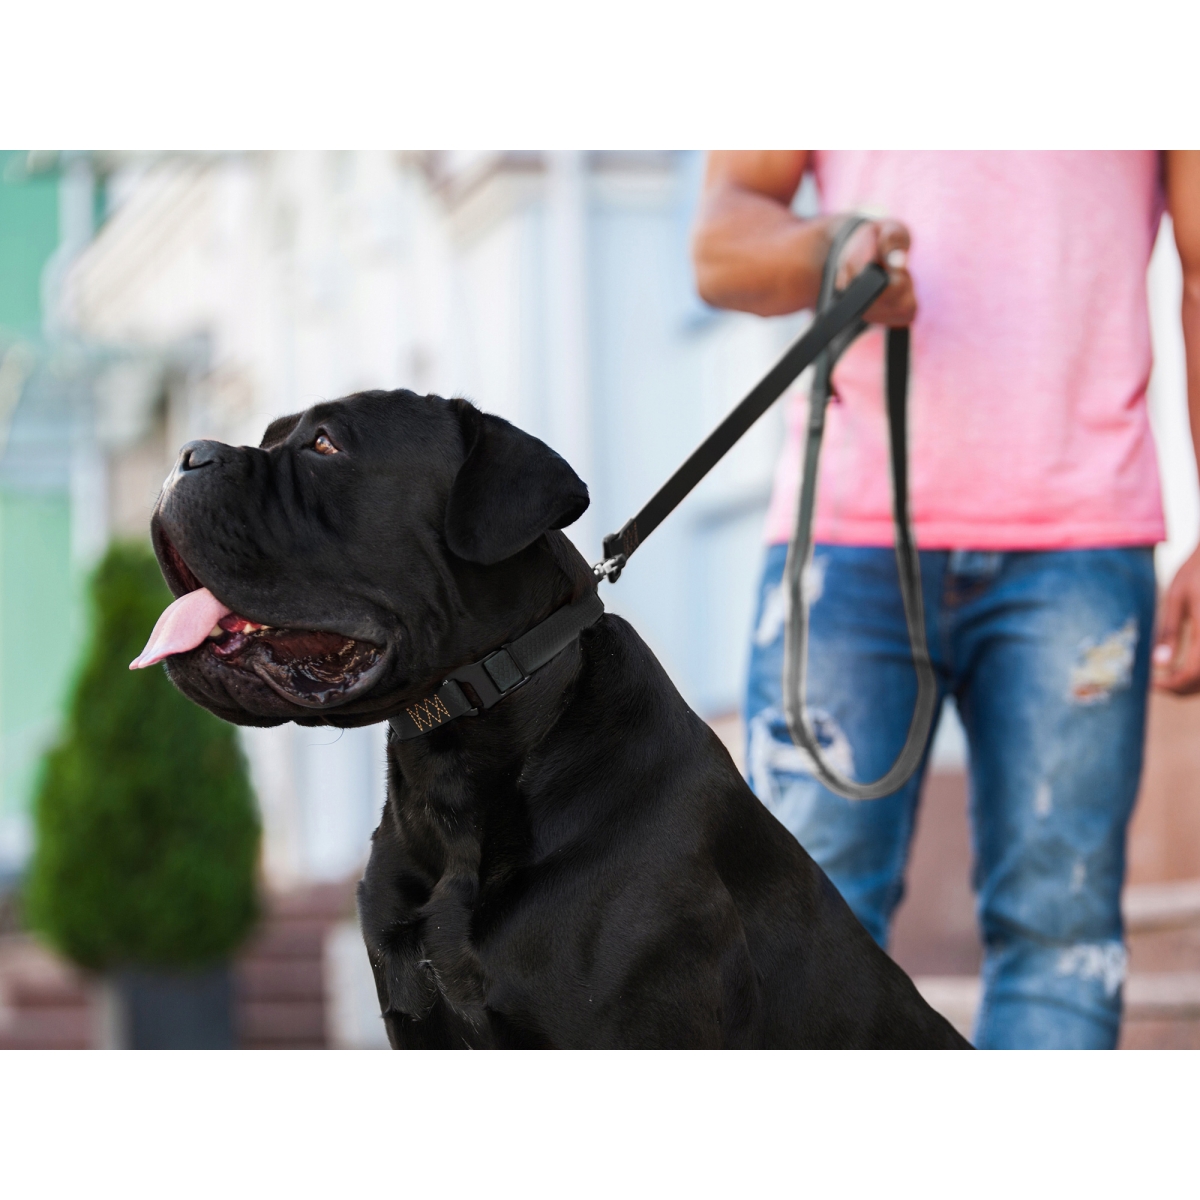 Smycz dla psów COLLAR EVOLUTOR szerokość 25 mm – NAJMOCNIEJSZA SMYCZ, czarna 